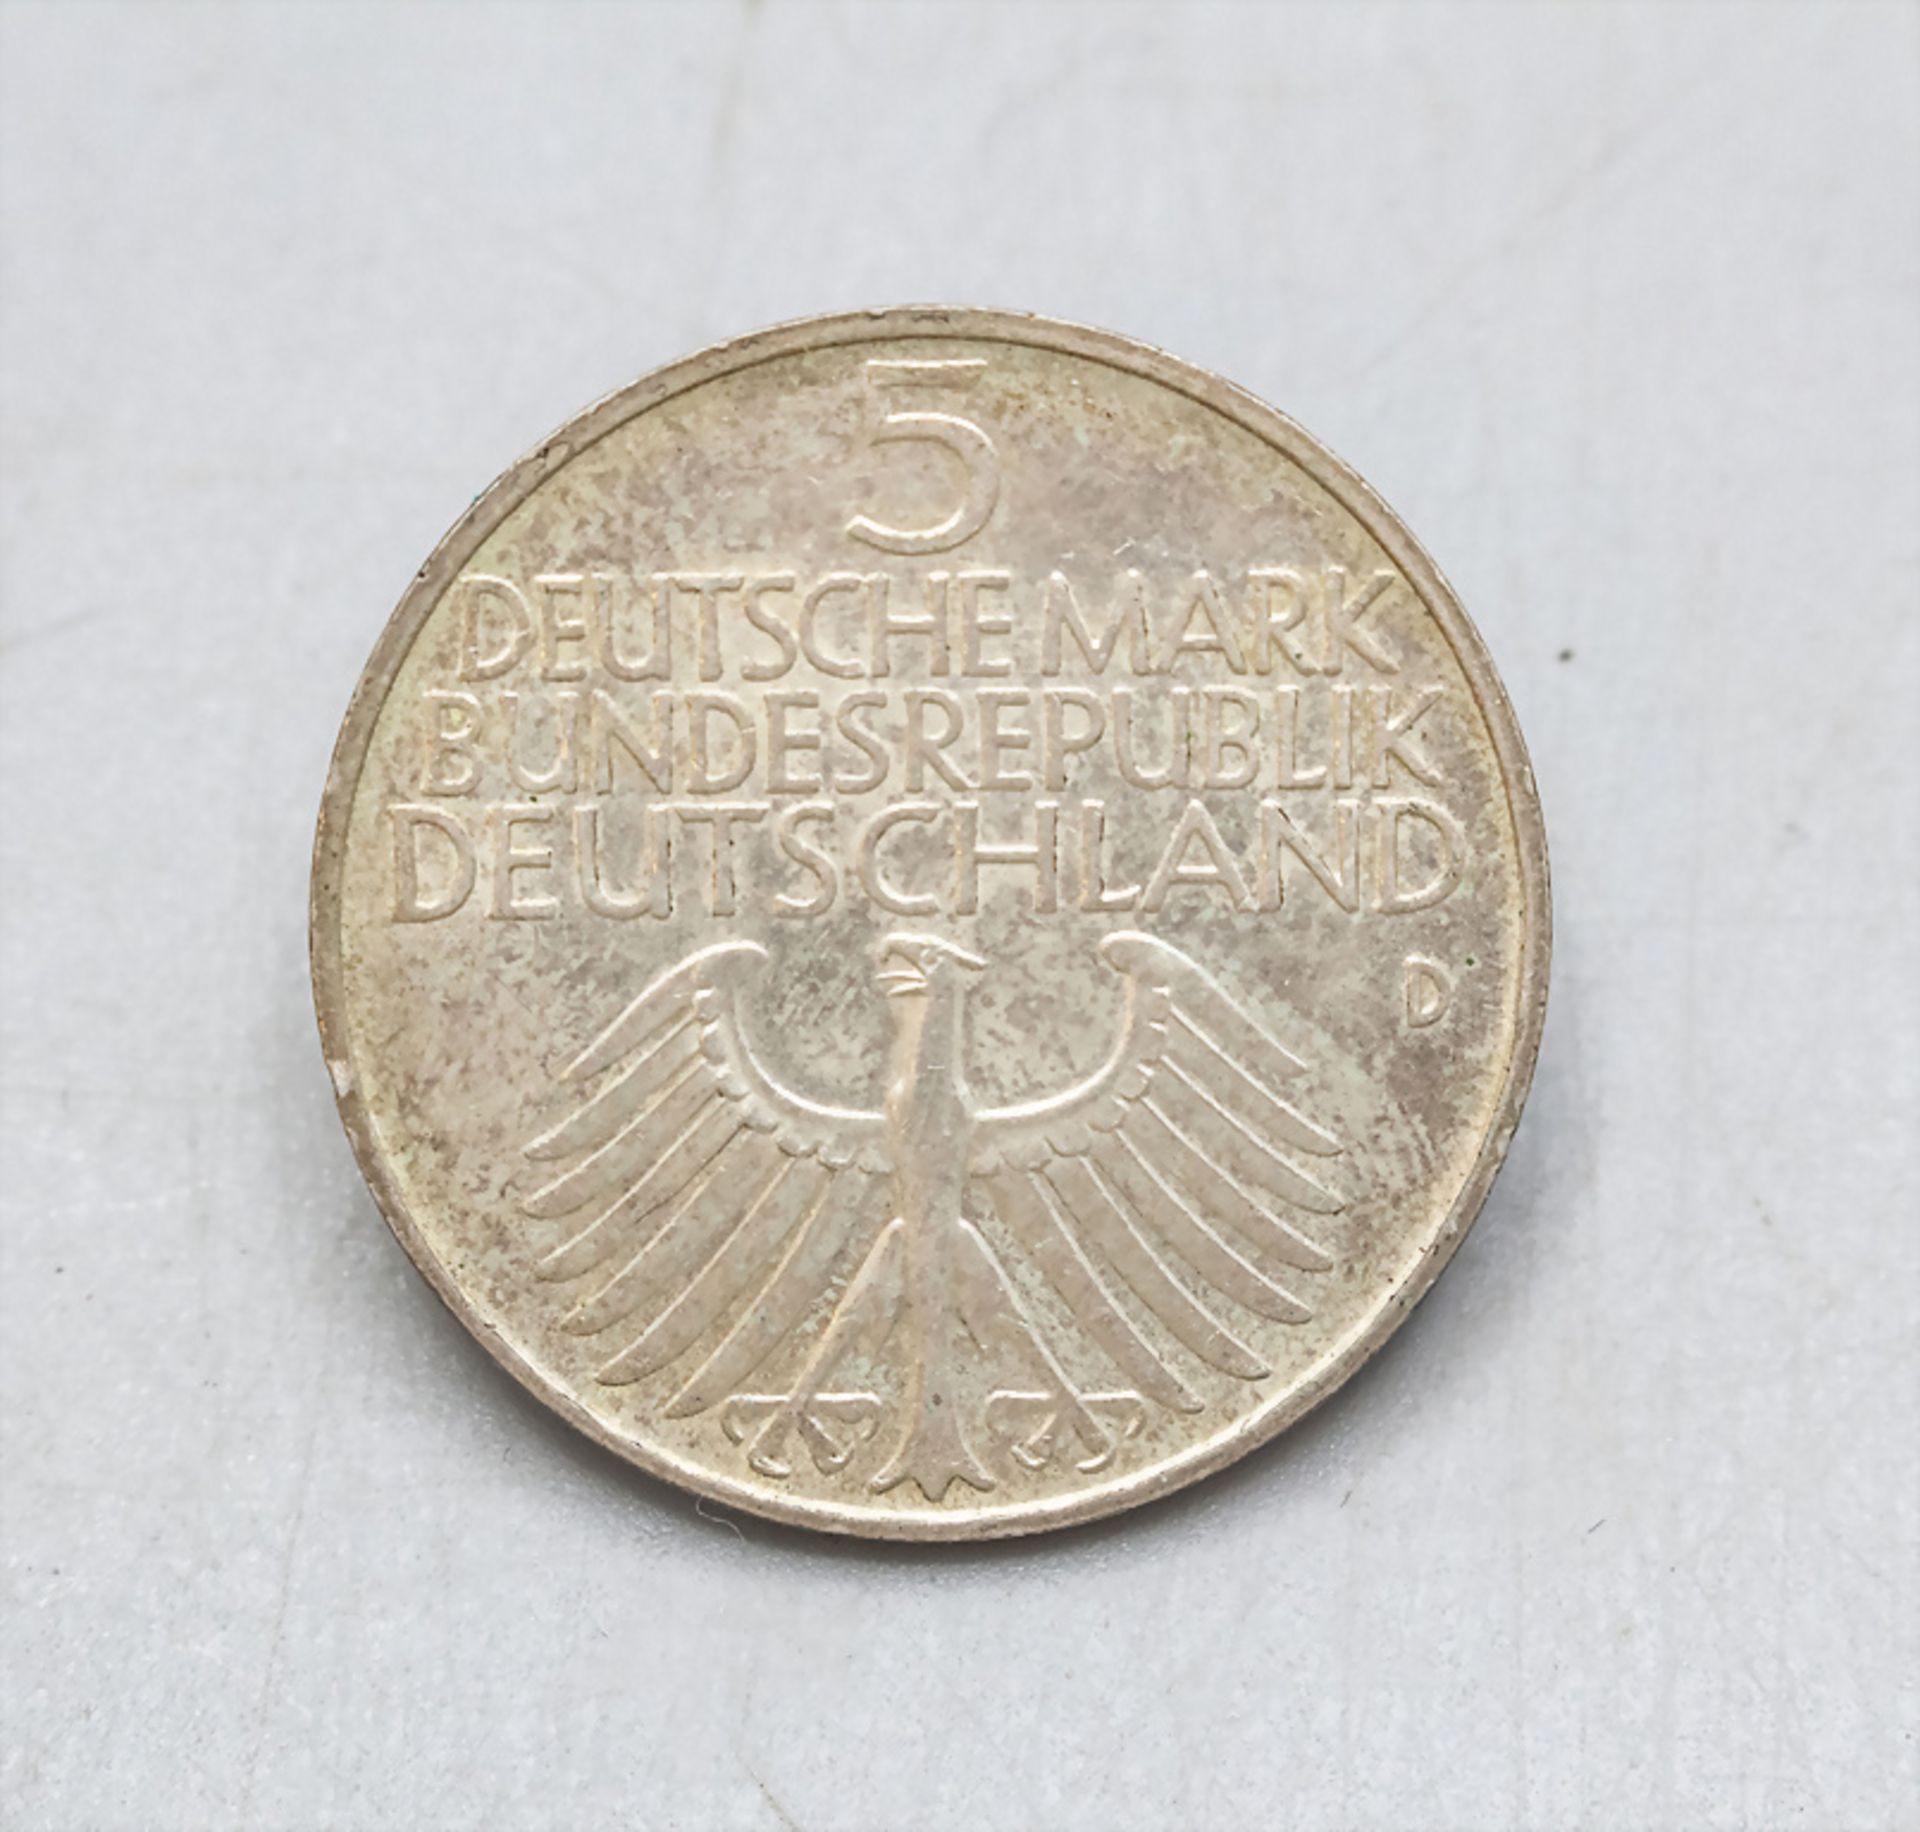 5 DM Gedenkmünze 'Germanisches Museum', 1952 - Image 2 of 2